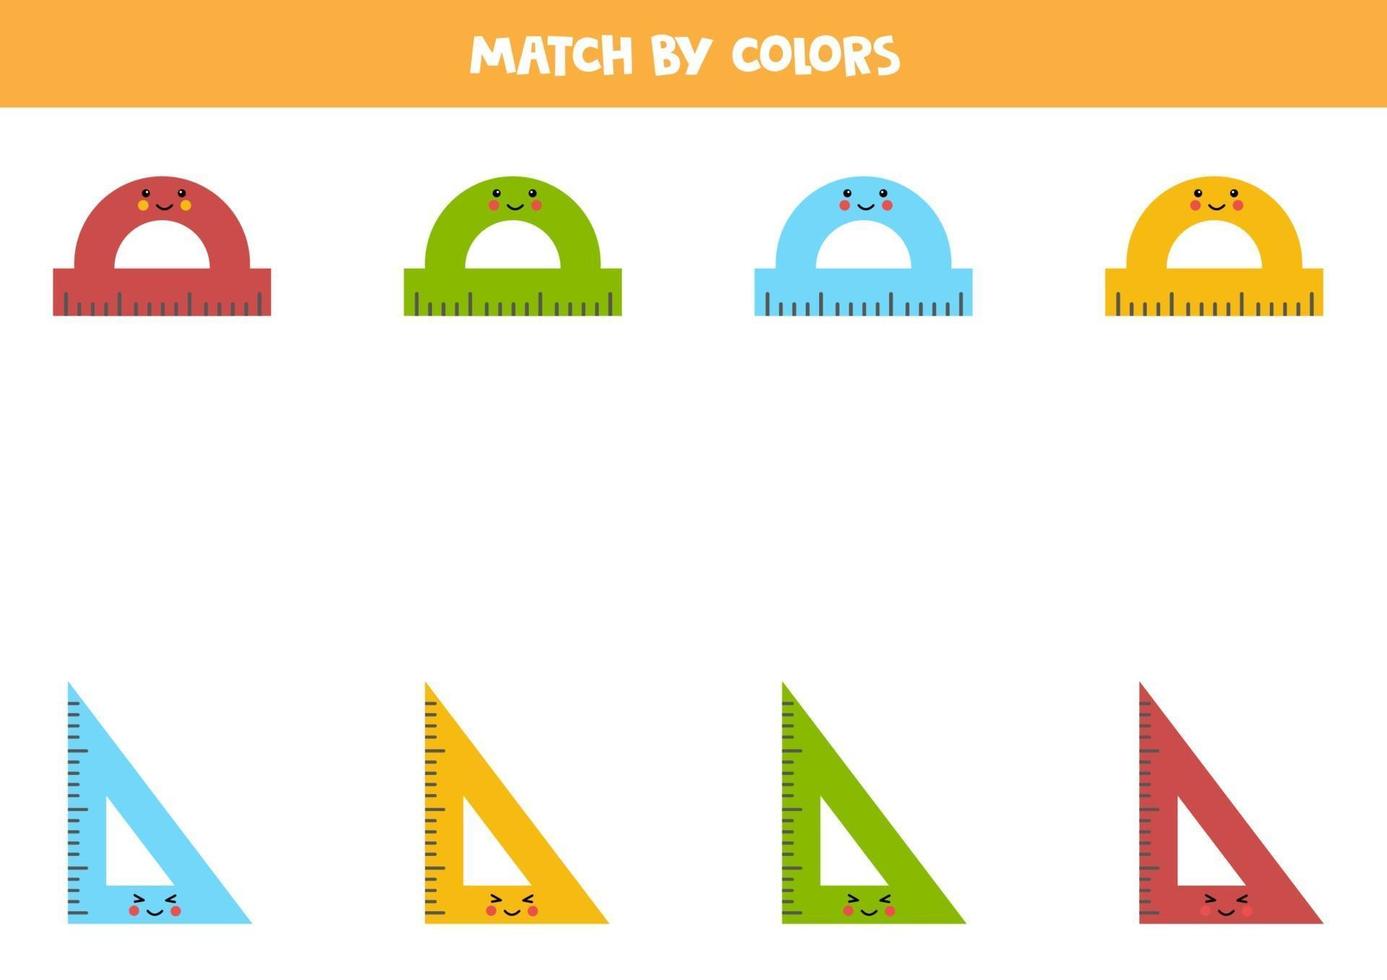 färgmatchningsspel för förskolebarn. matcha linjaler efter färger. vektor